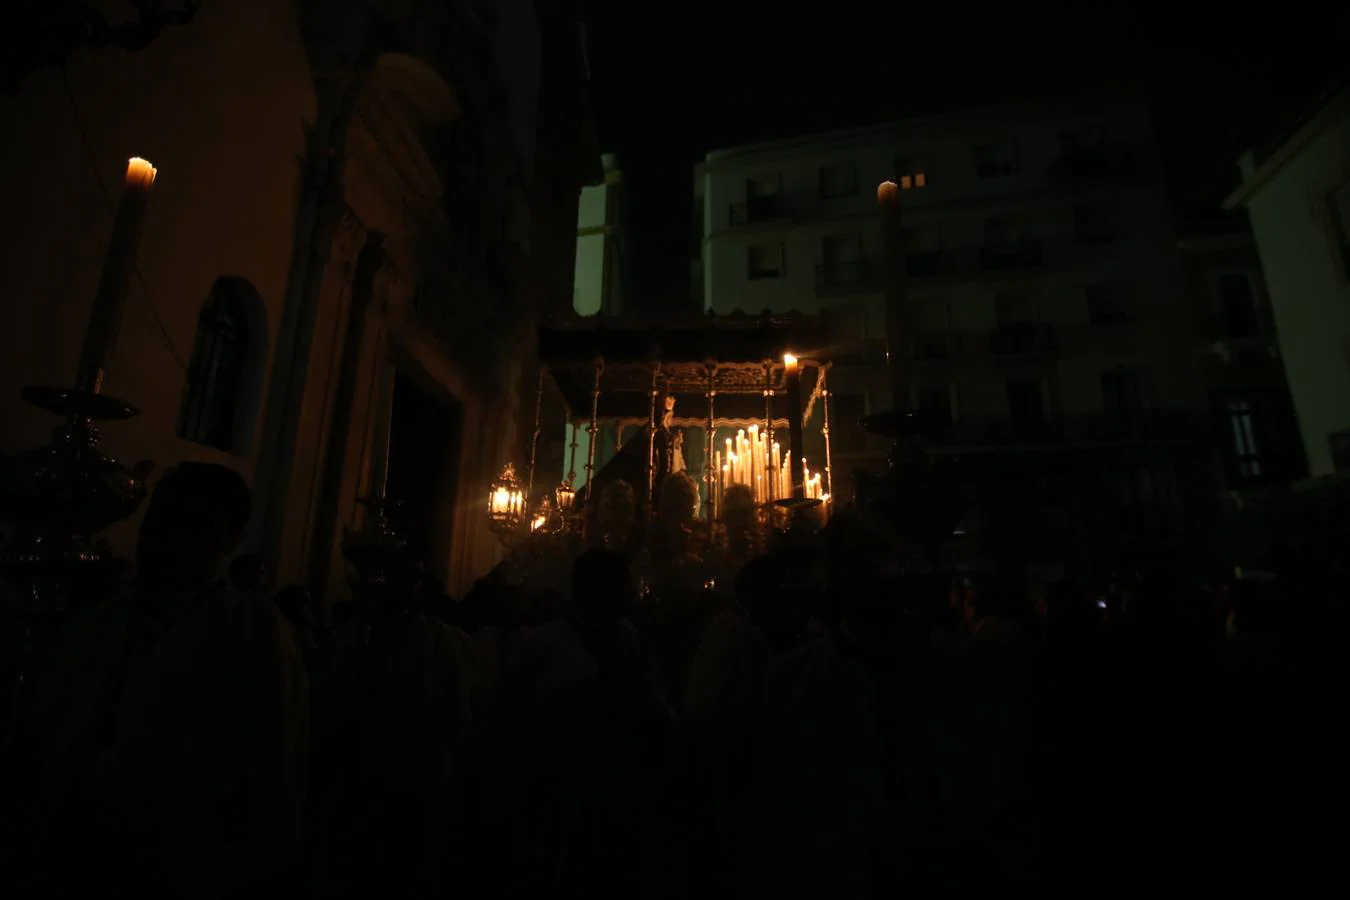 Buena Muerte, en el Viernes Santo de Cádiz